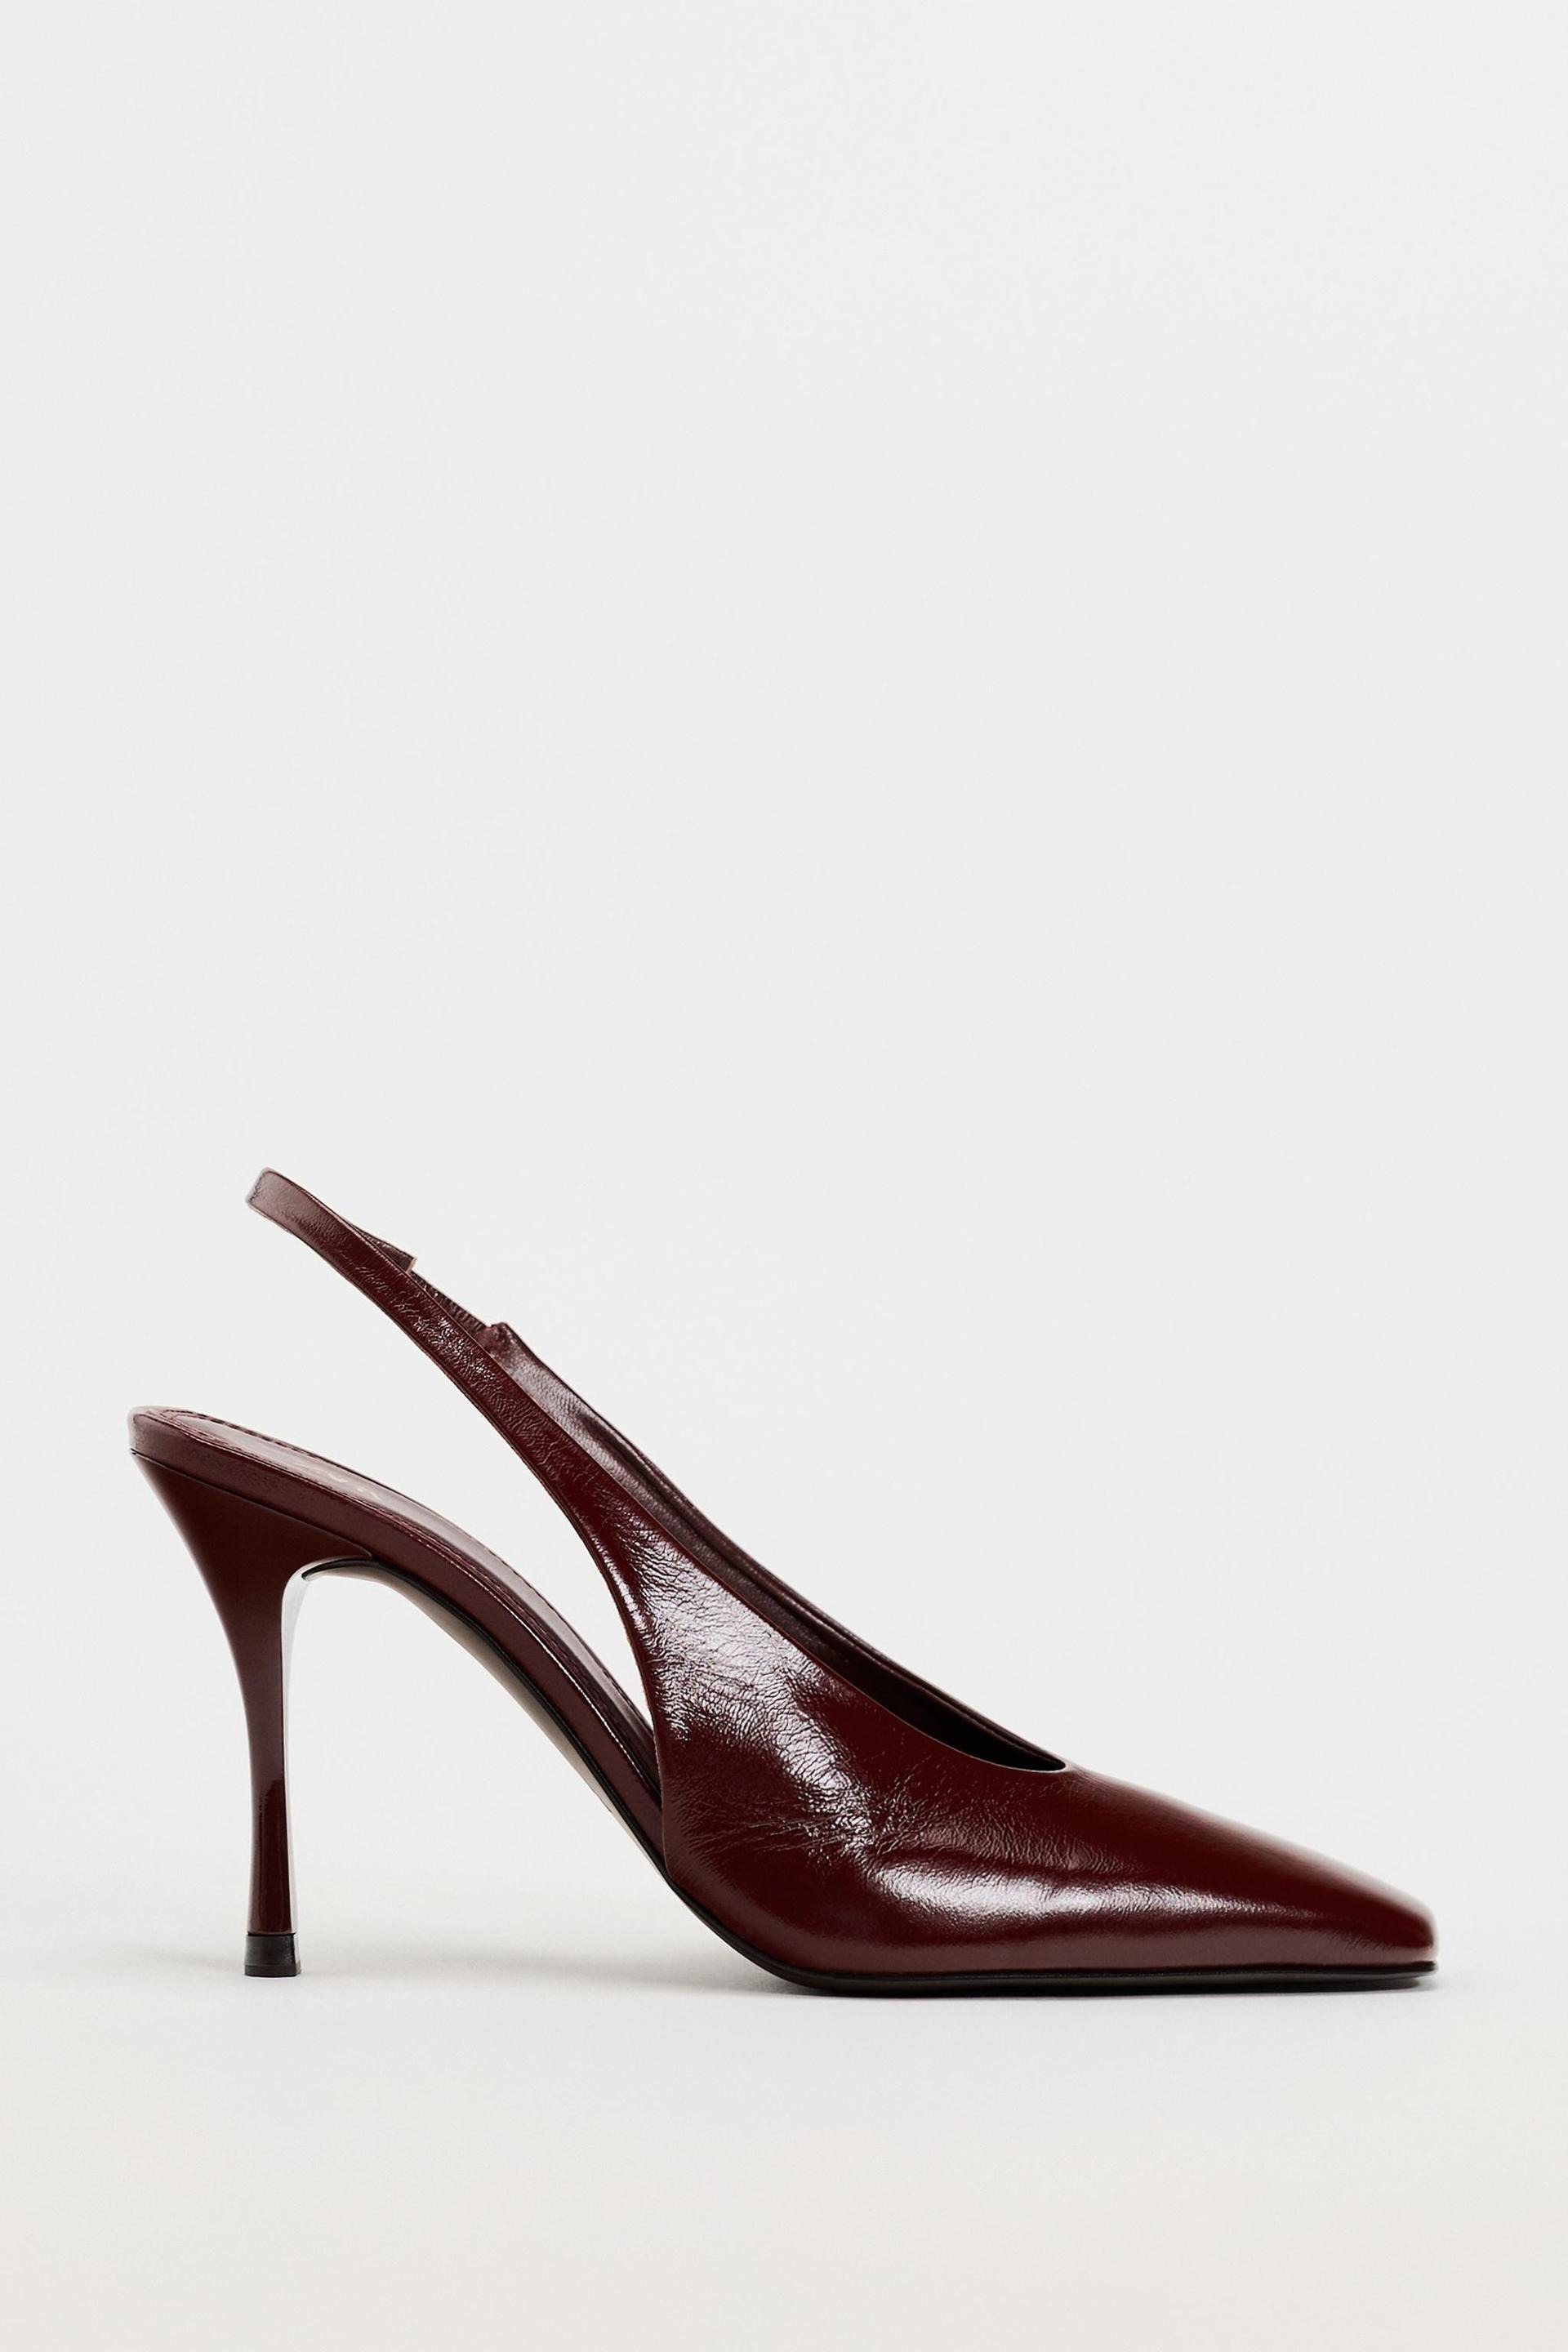 Zara maroon slingback heels